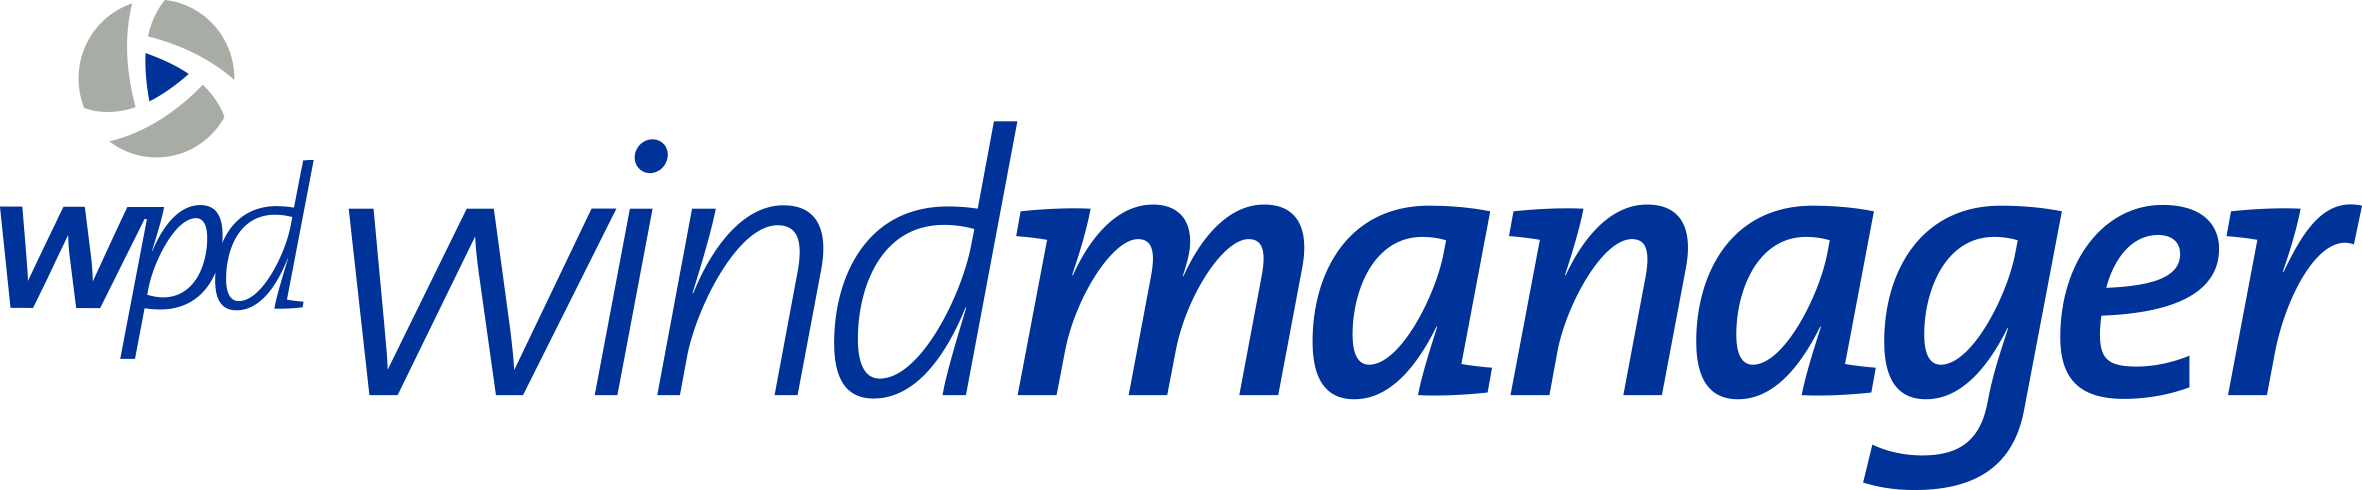 Logo de WPD